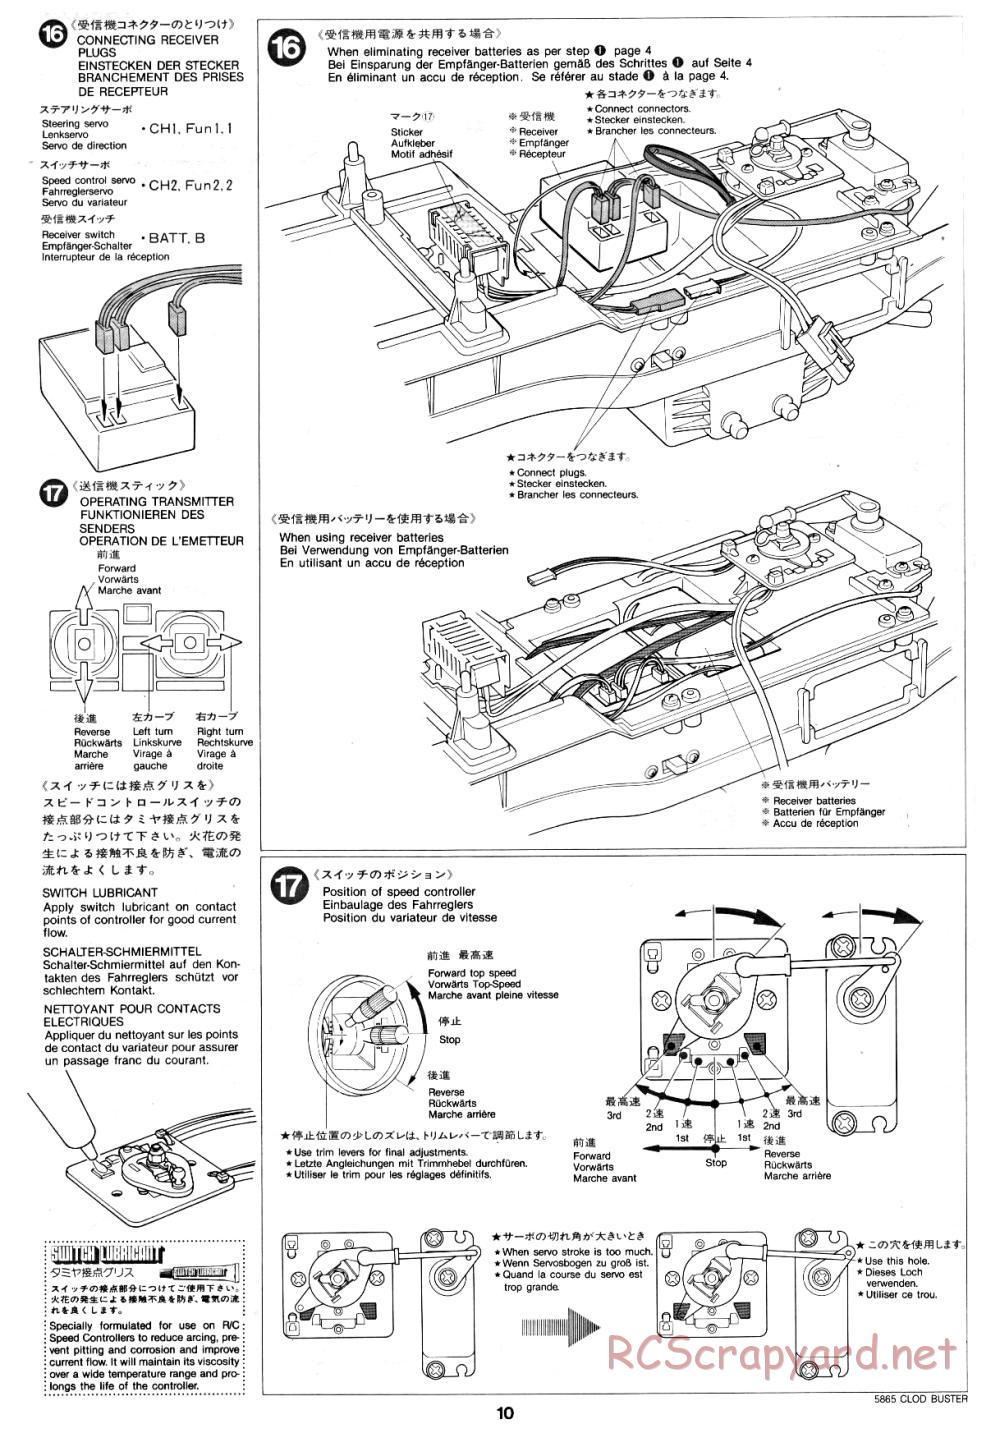 Tamiya - Clod Buster - 58065 - Manual - Page 10